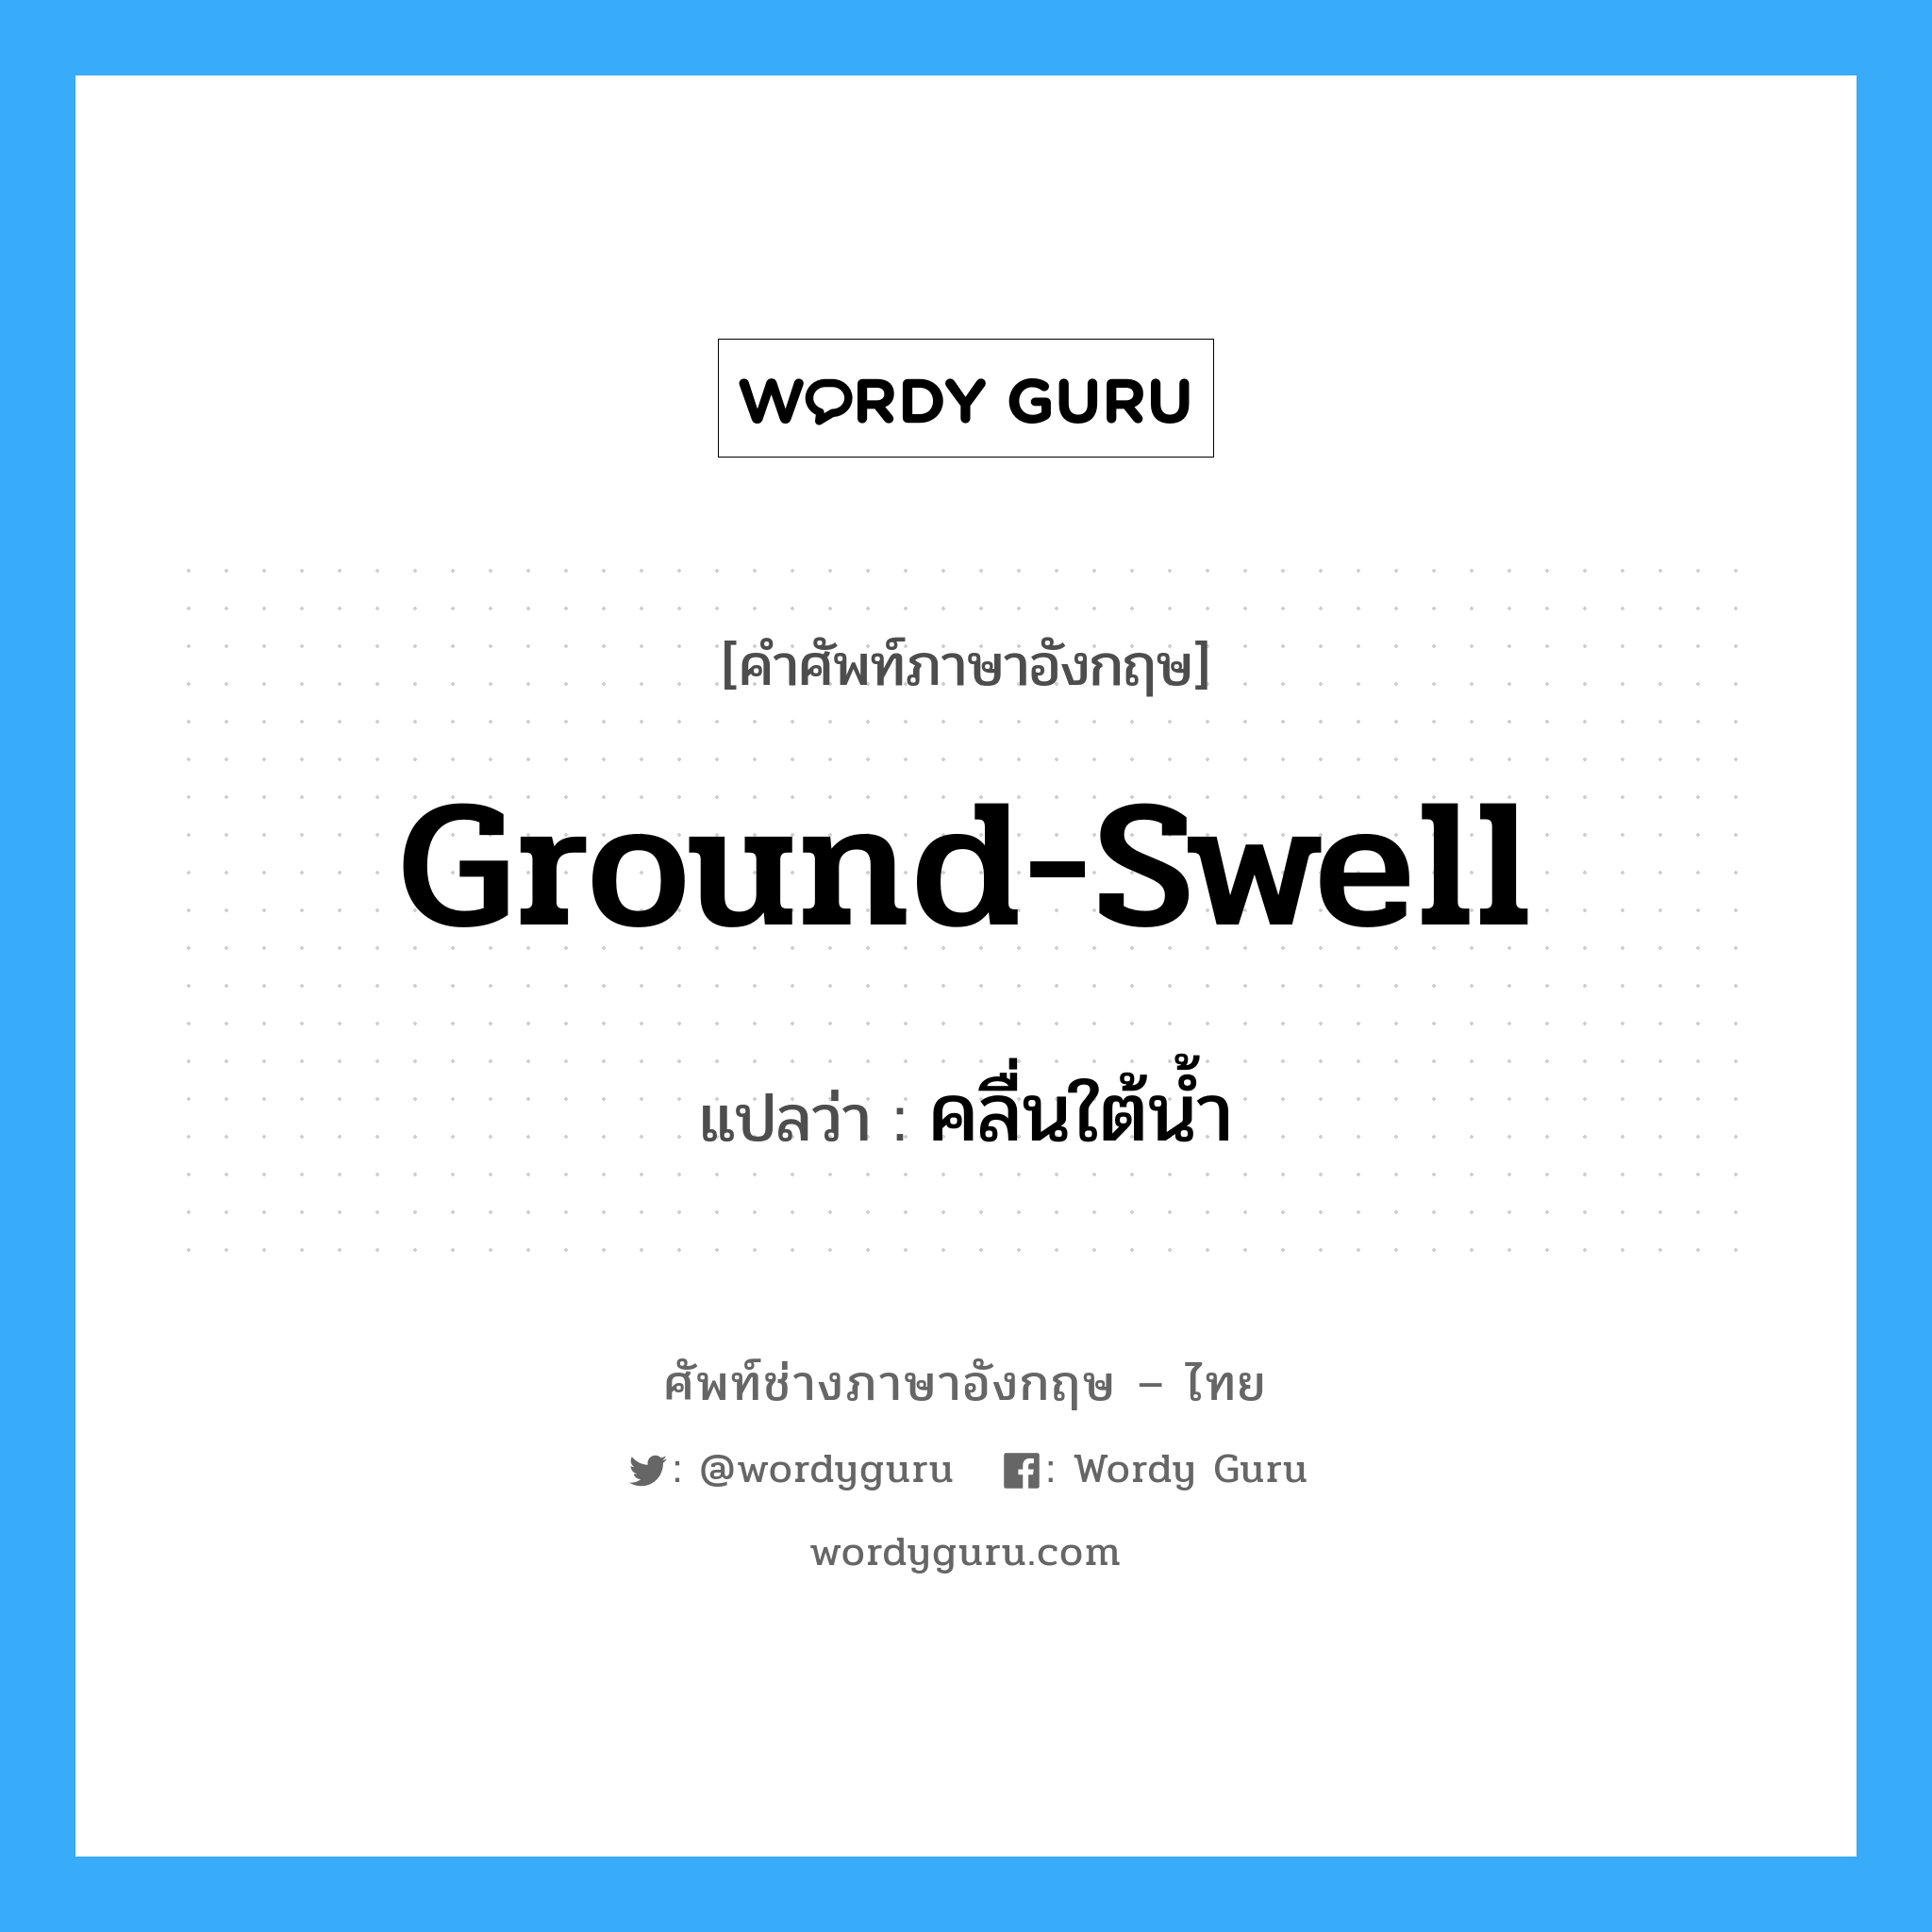 ground-swell แปลว่า?, คำศัพท์ช่างภาษาอังกฤษ - ไทย ground-swell คำศัพท์ภาษาอังกฤษ ground-swell แปลว่า คลื่นใต้น้ำ